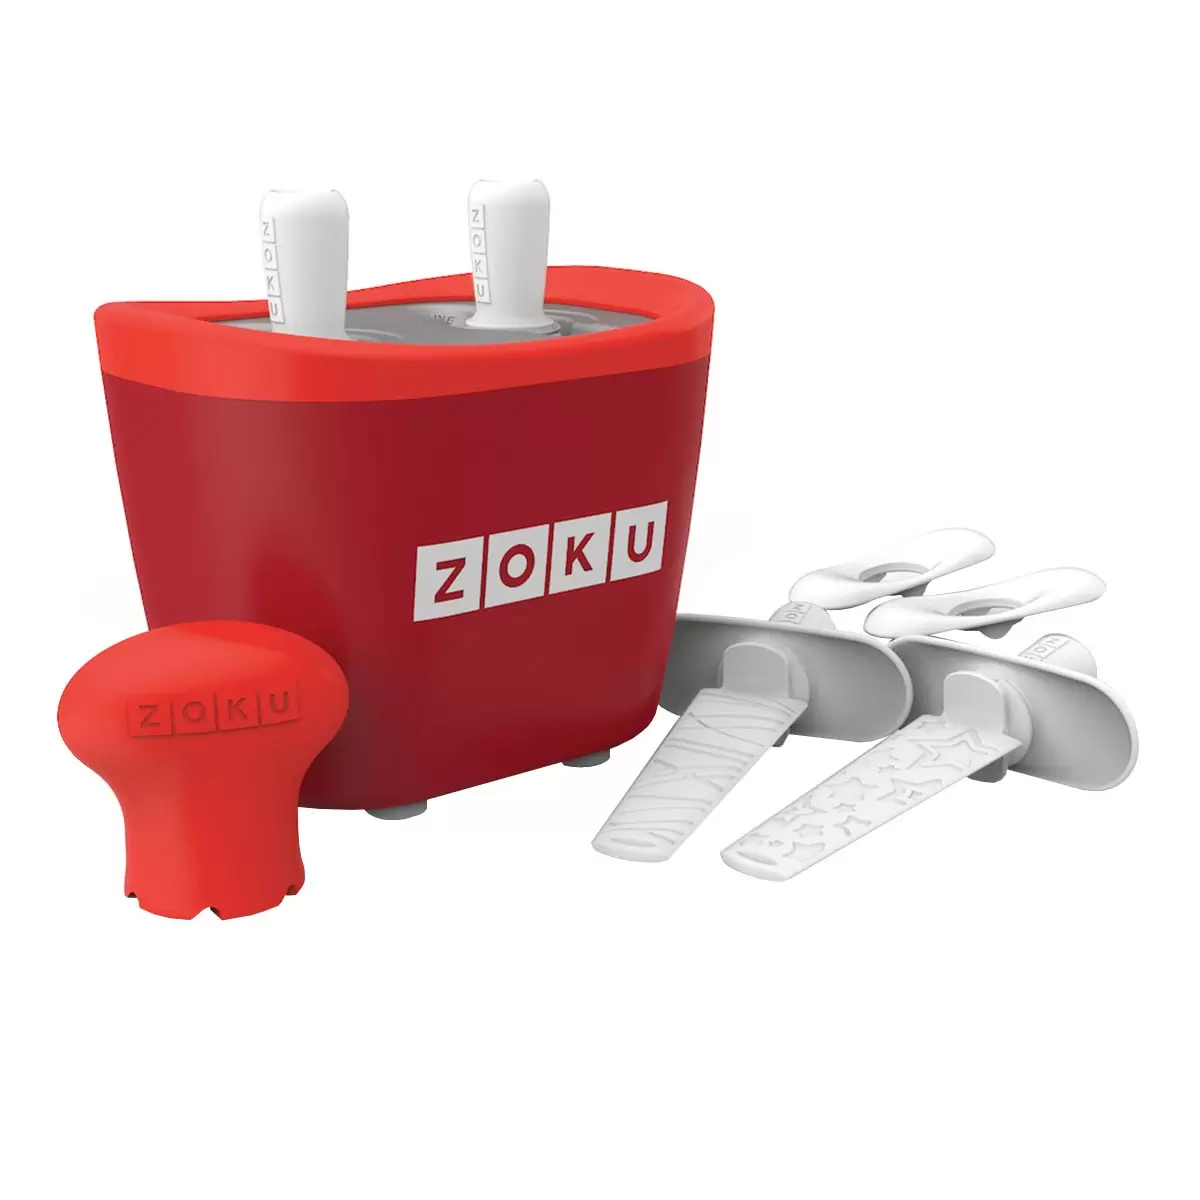 ZOKU 快速製冰棒機 兩支裝 紅色